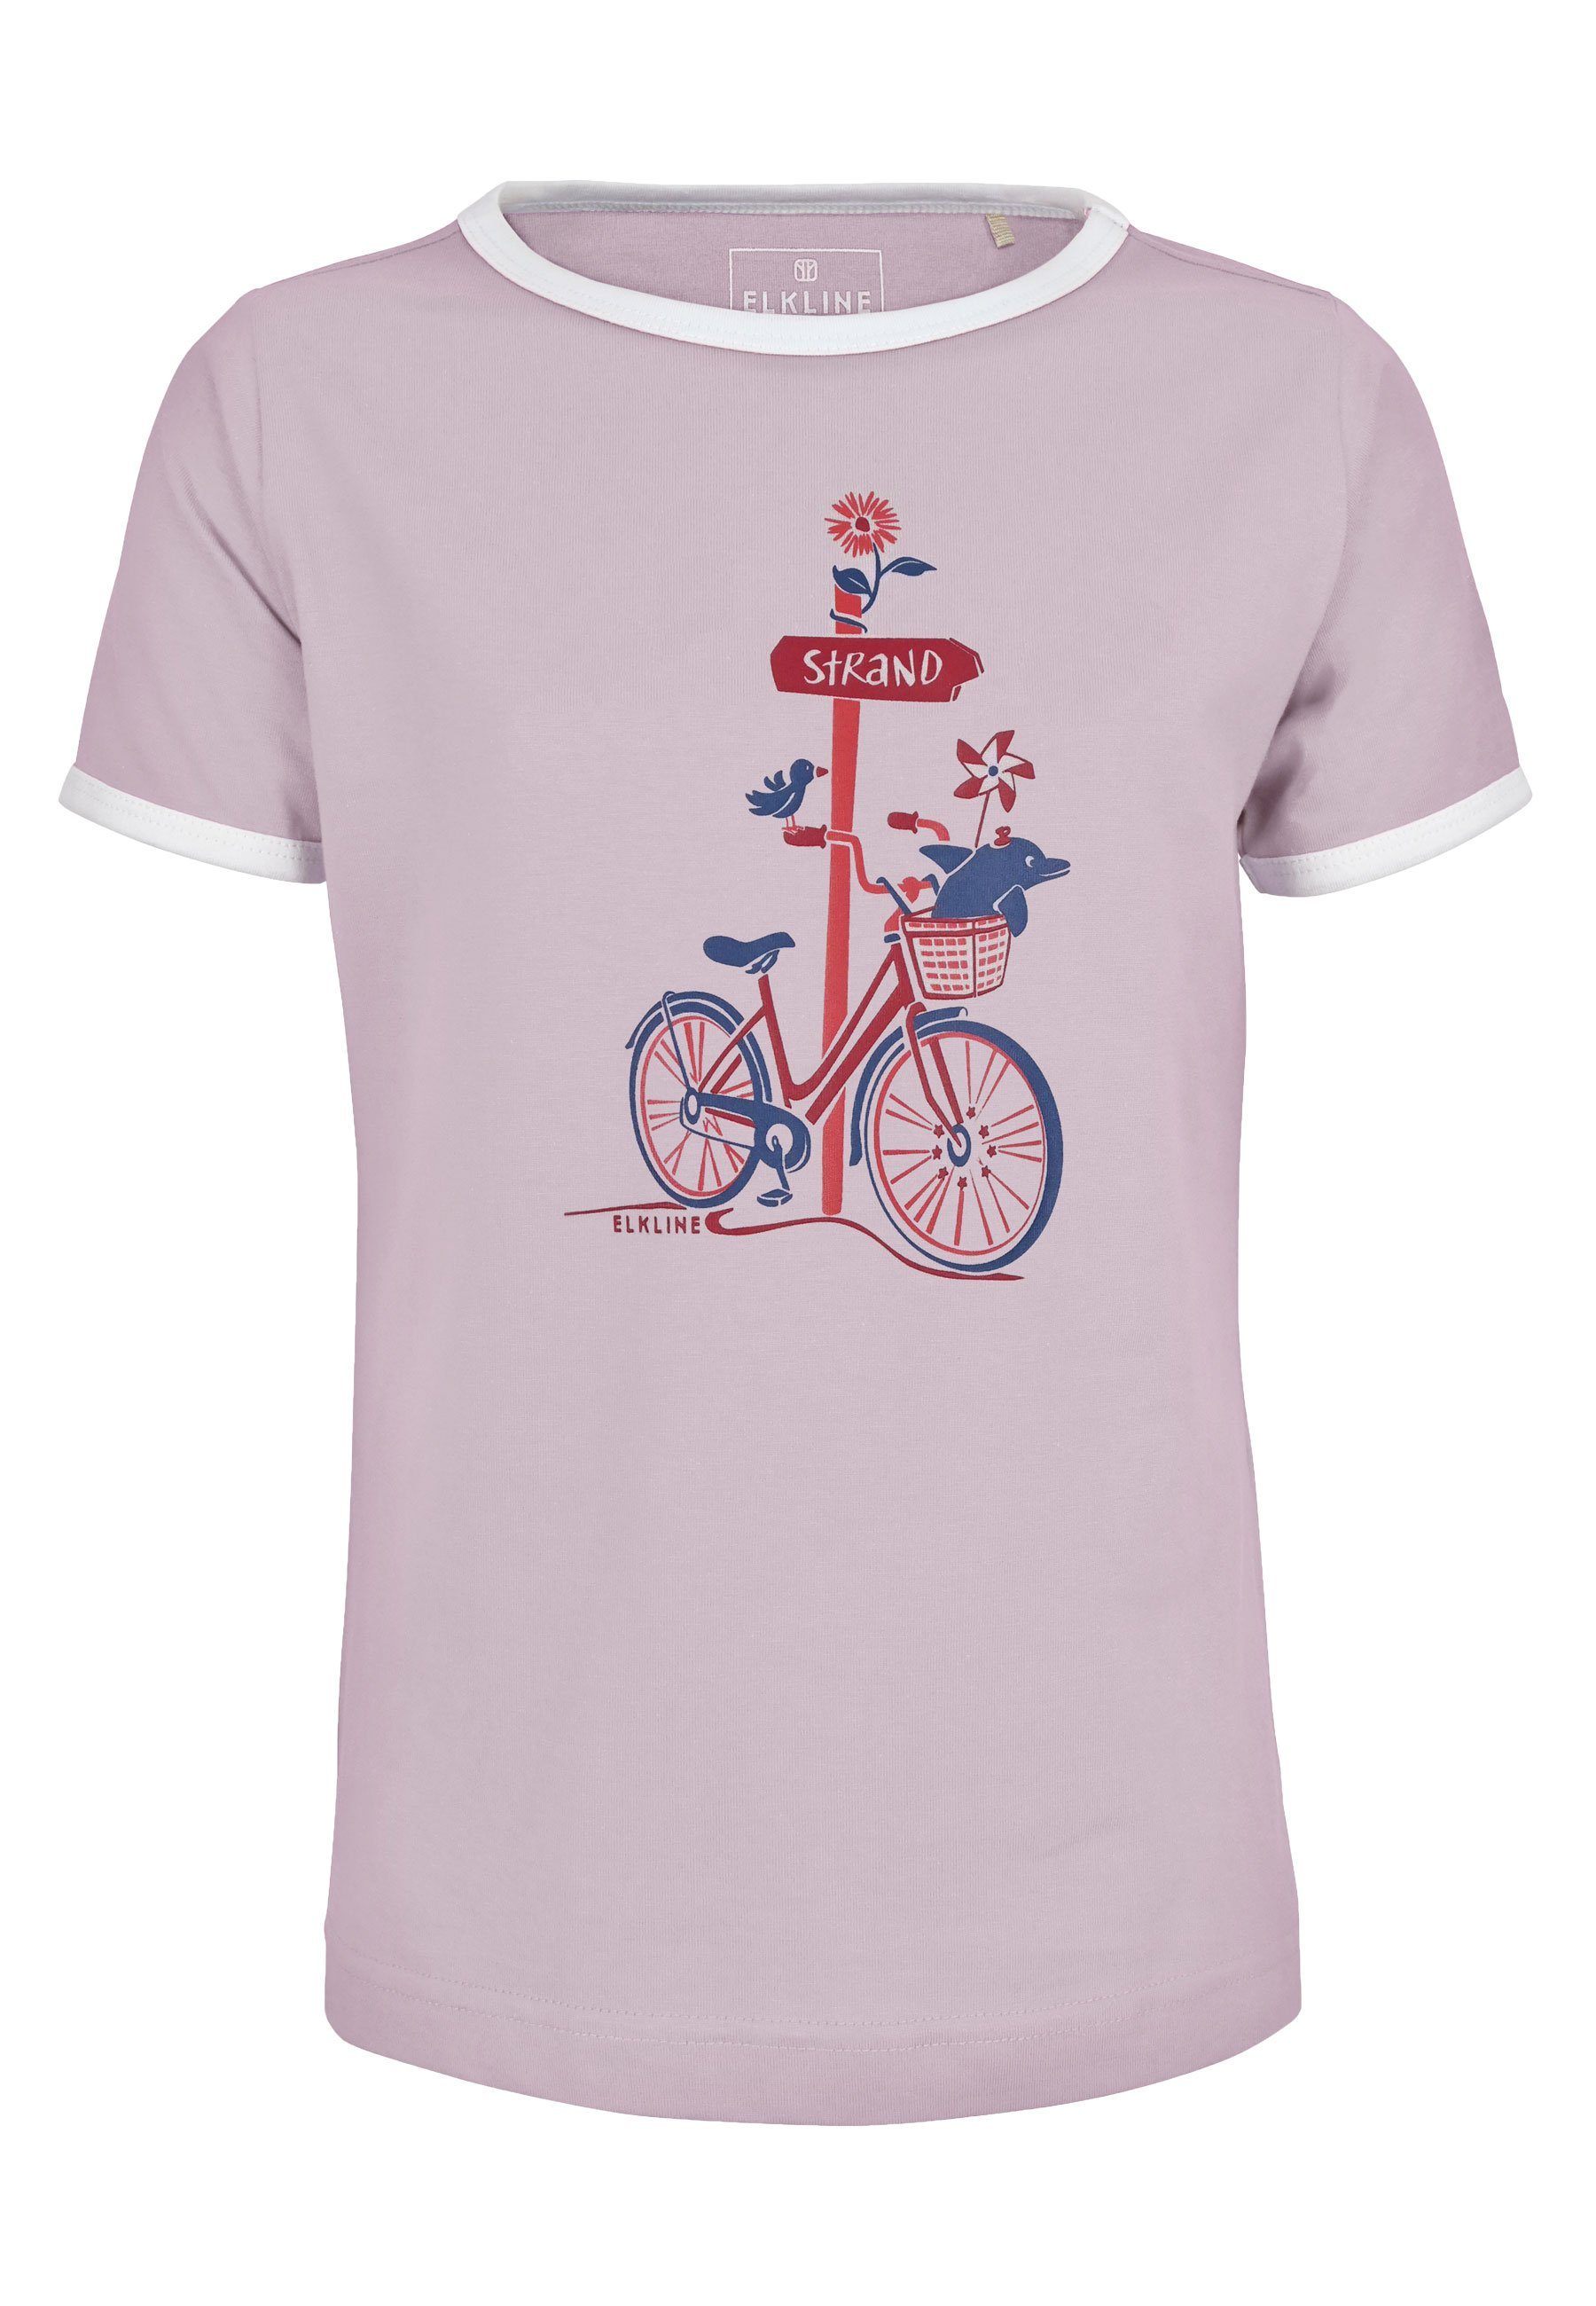 Elkline T-Shirt Zum Strand Fahrrad Brust Print leicht tailliert lavender